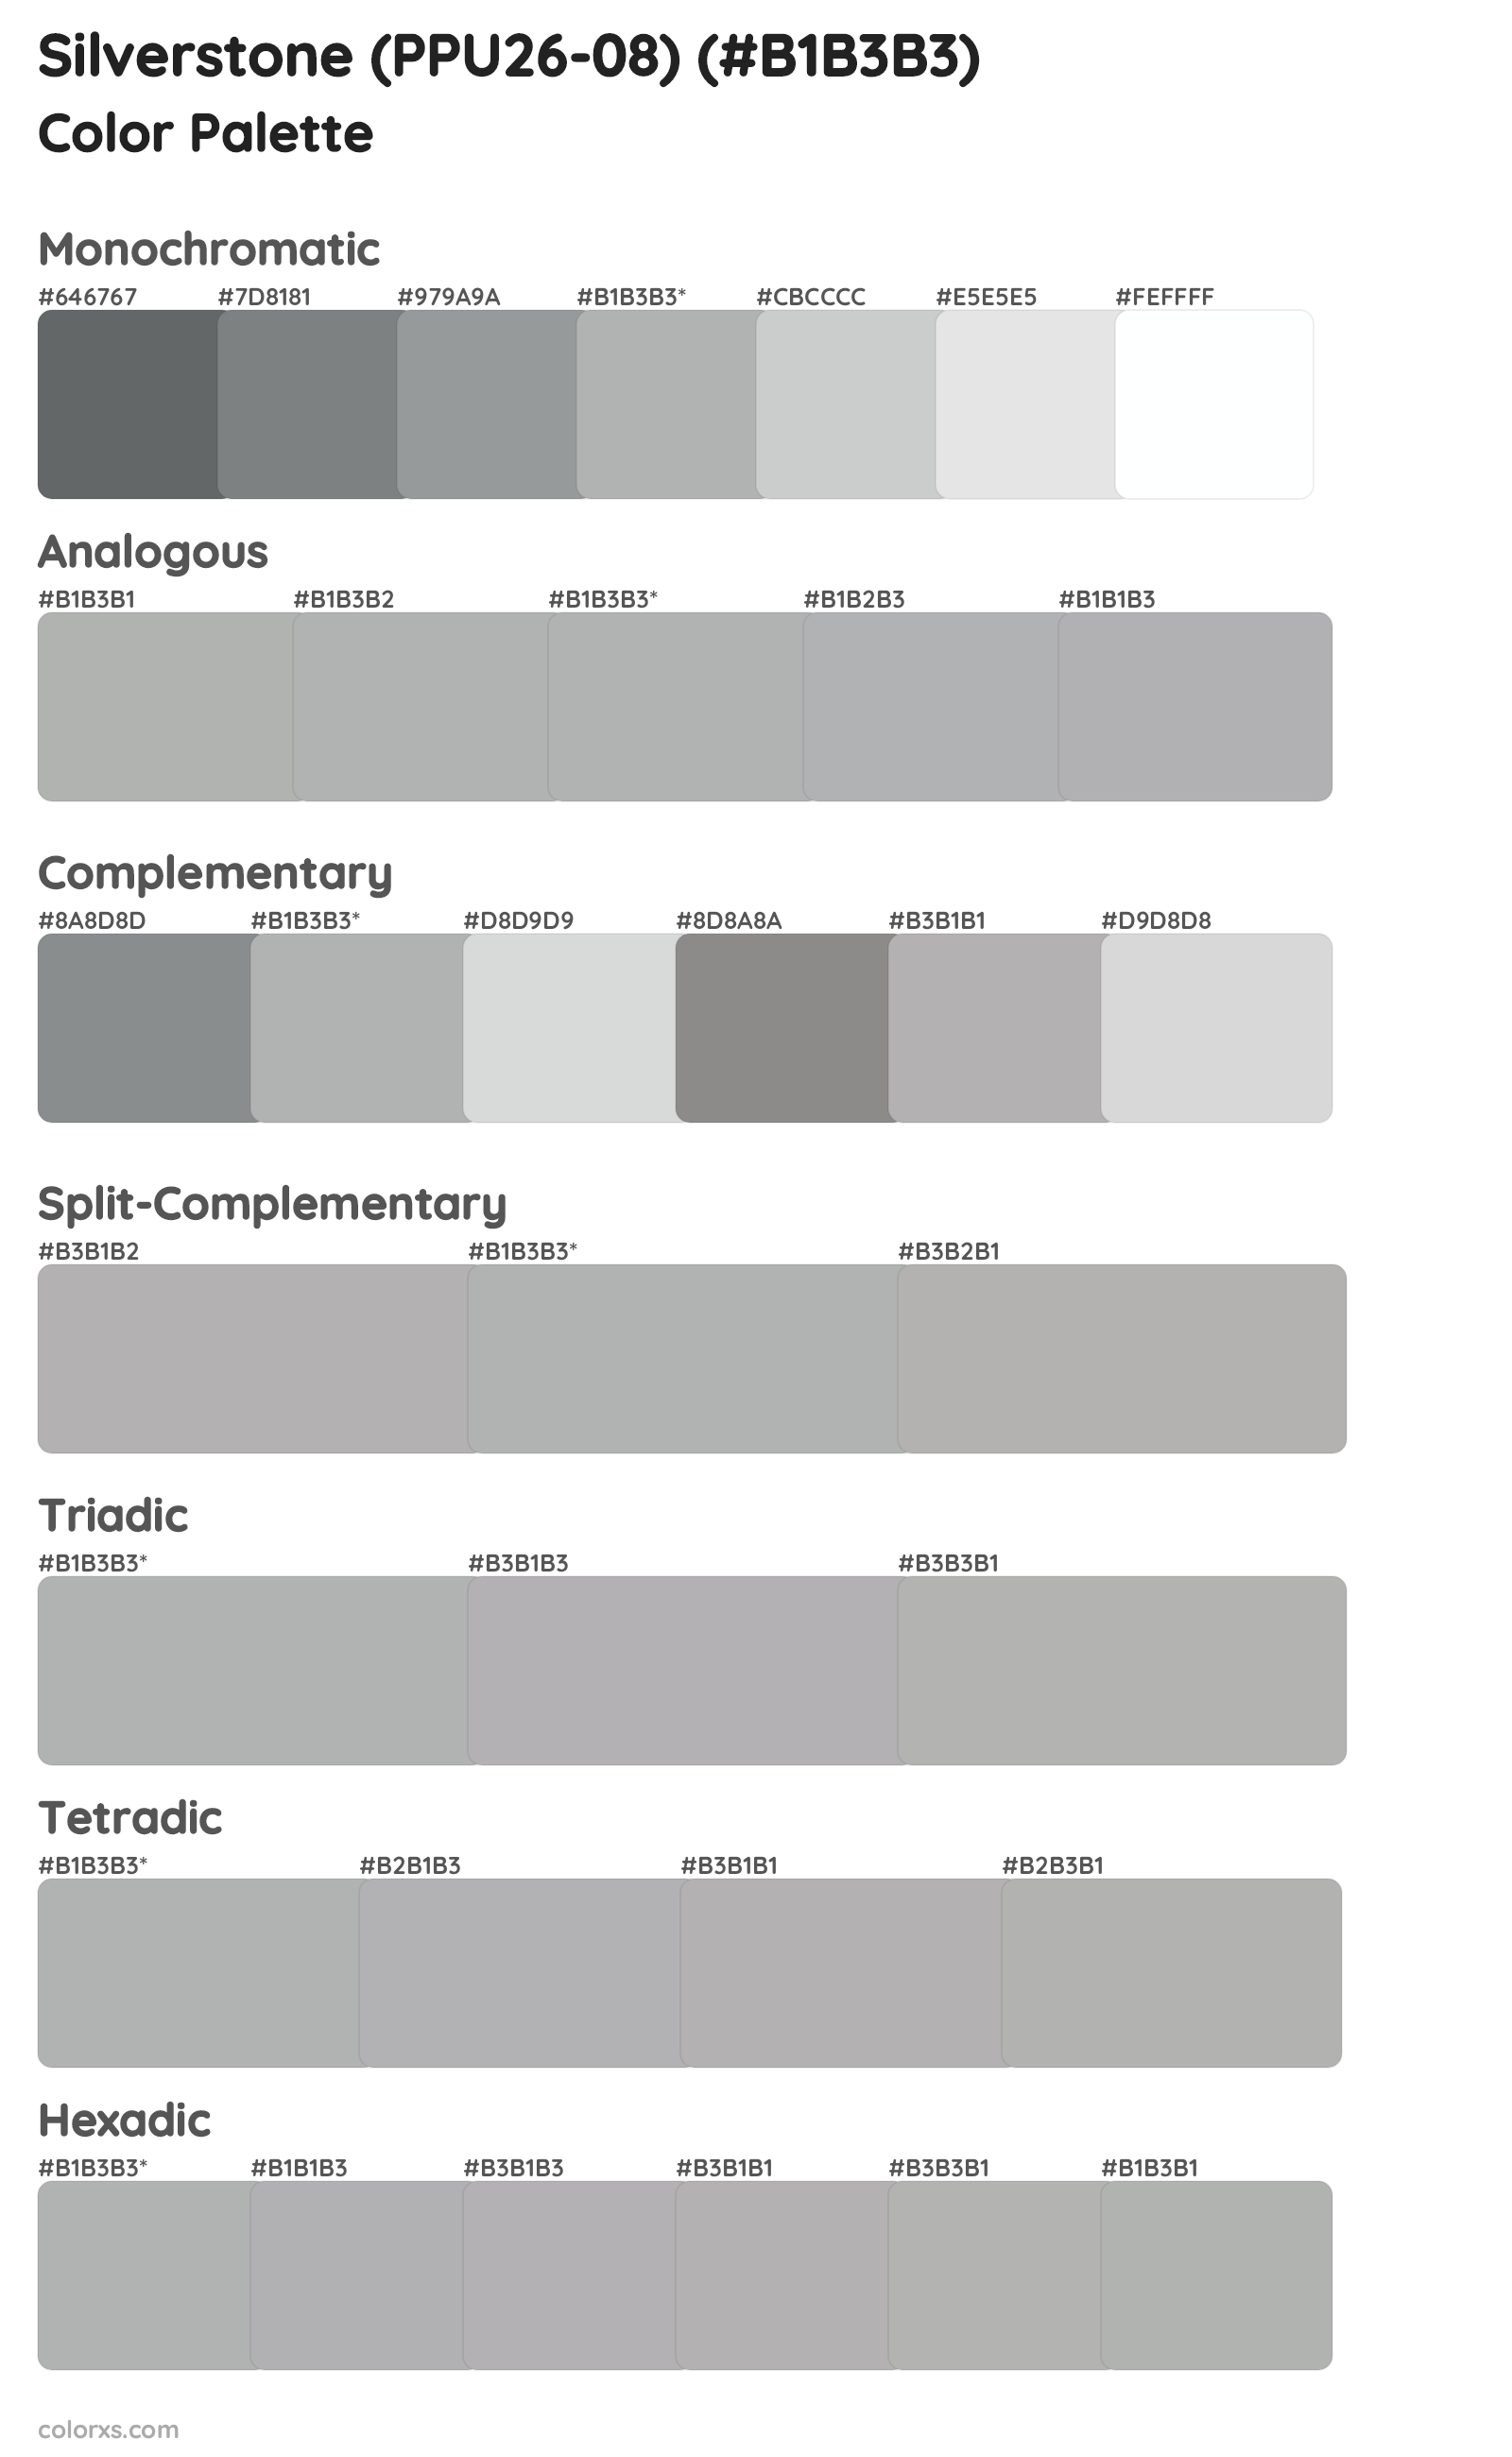 Silverstone (PPU26-08) Color Scheme Palettes